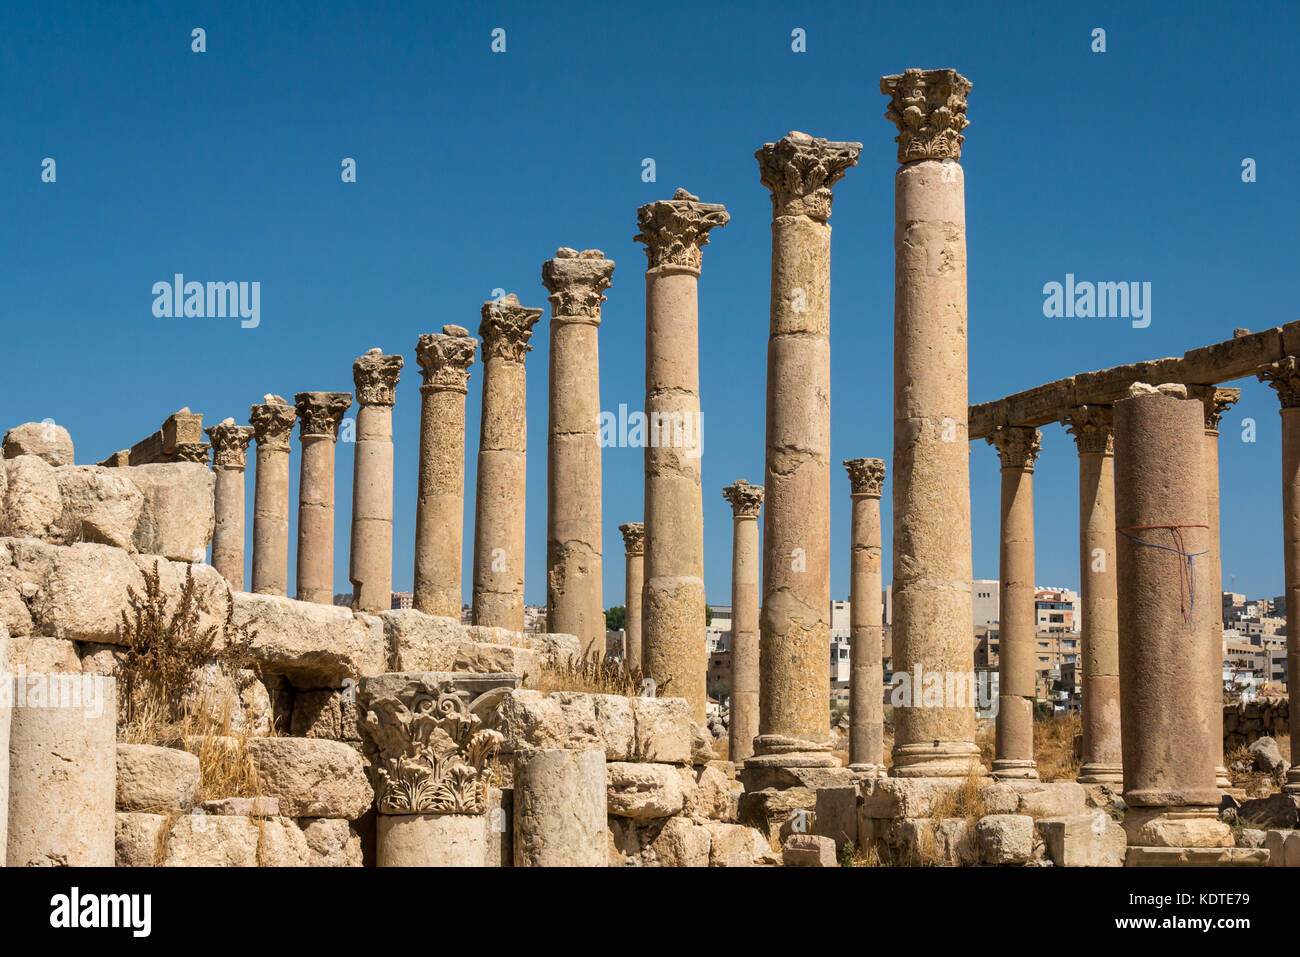 Cardo con columnas corintias, la ciudad romana de Jerash, la antigua Gerasa, sitio arqueológico y turístico, Jordania, Oriente Medio Foto de stock